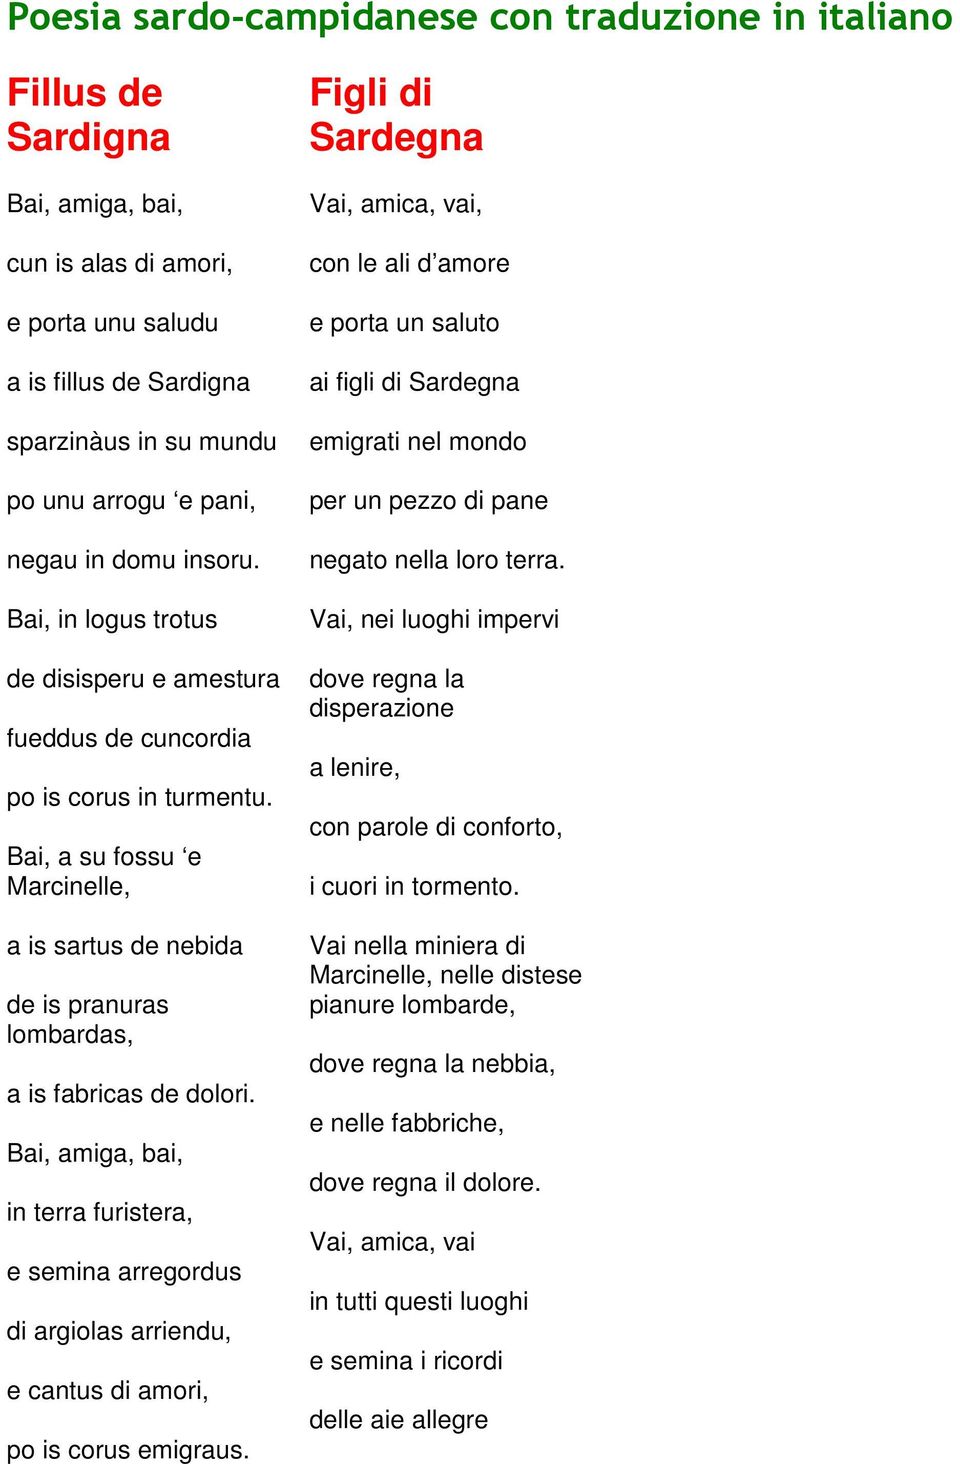 Poesie Di Natale In Sardo Per Bambini.Poesia Sardo Campidanese Con Traduzione In Italiano Fillus De Sardigna Pdf Free Download